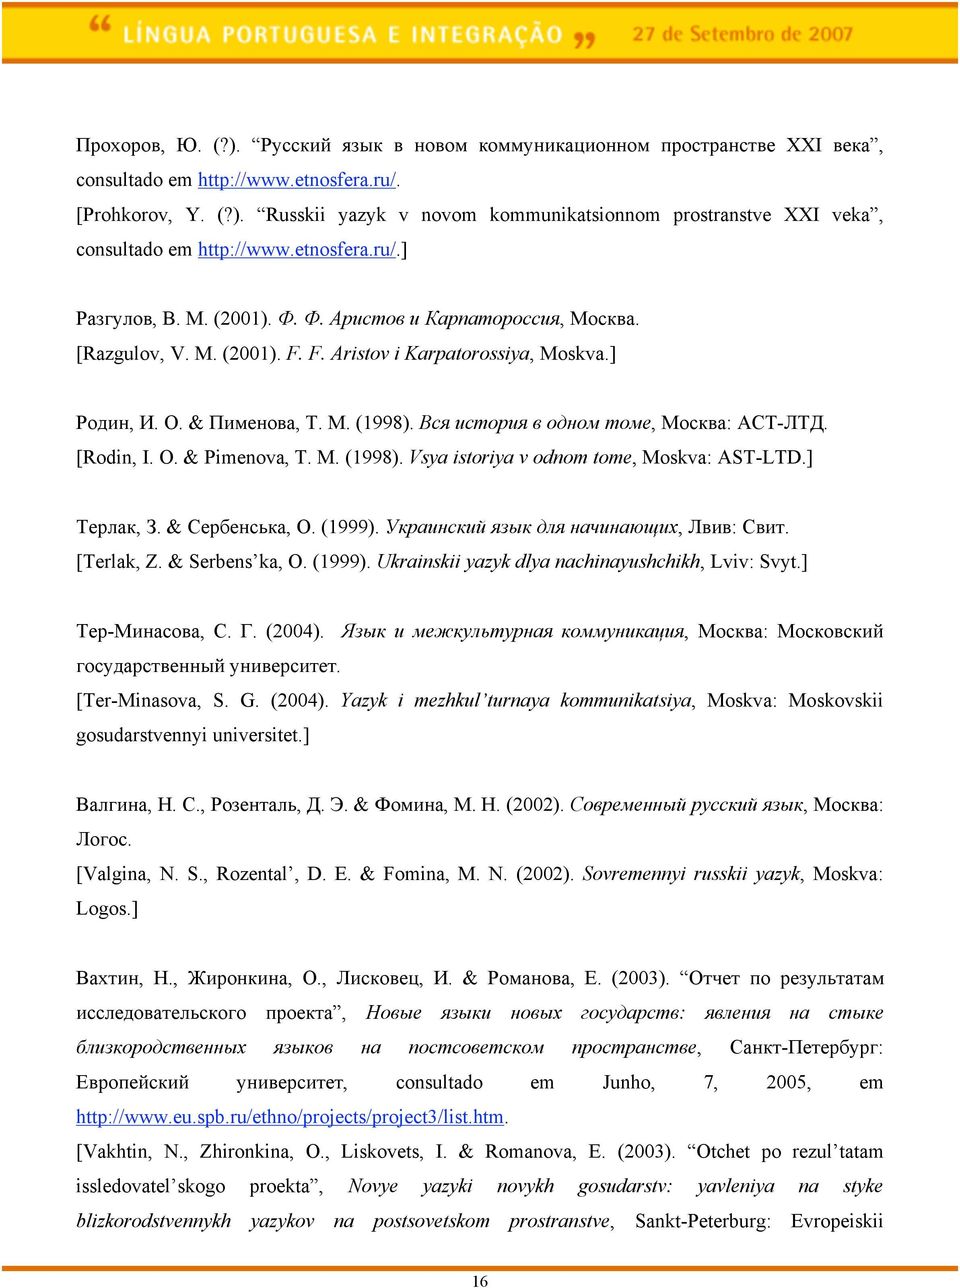 L,4 ',(*0'4 2 */$*" (*"#, *+,-'.: HCE-(E/. [Rodin, I. O. & Pimenova, T. M. (1998). Vsya istoriya v odnom tome, Moskva: AST-LTD.] E&6%.-, S. & C&6<&7,8-., N. (1999). B-0+'$,-'3 4A.